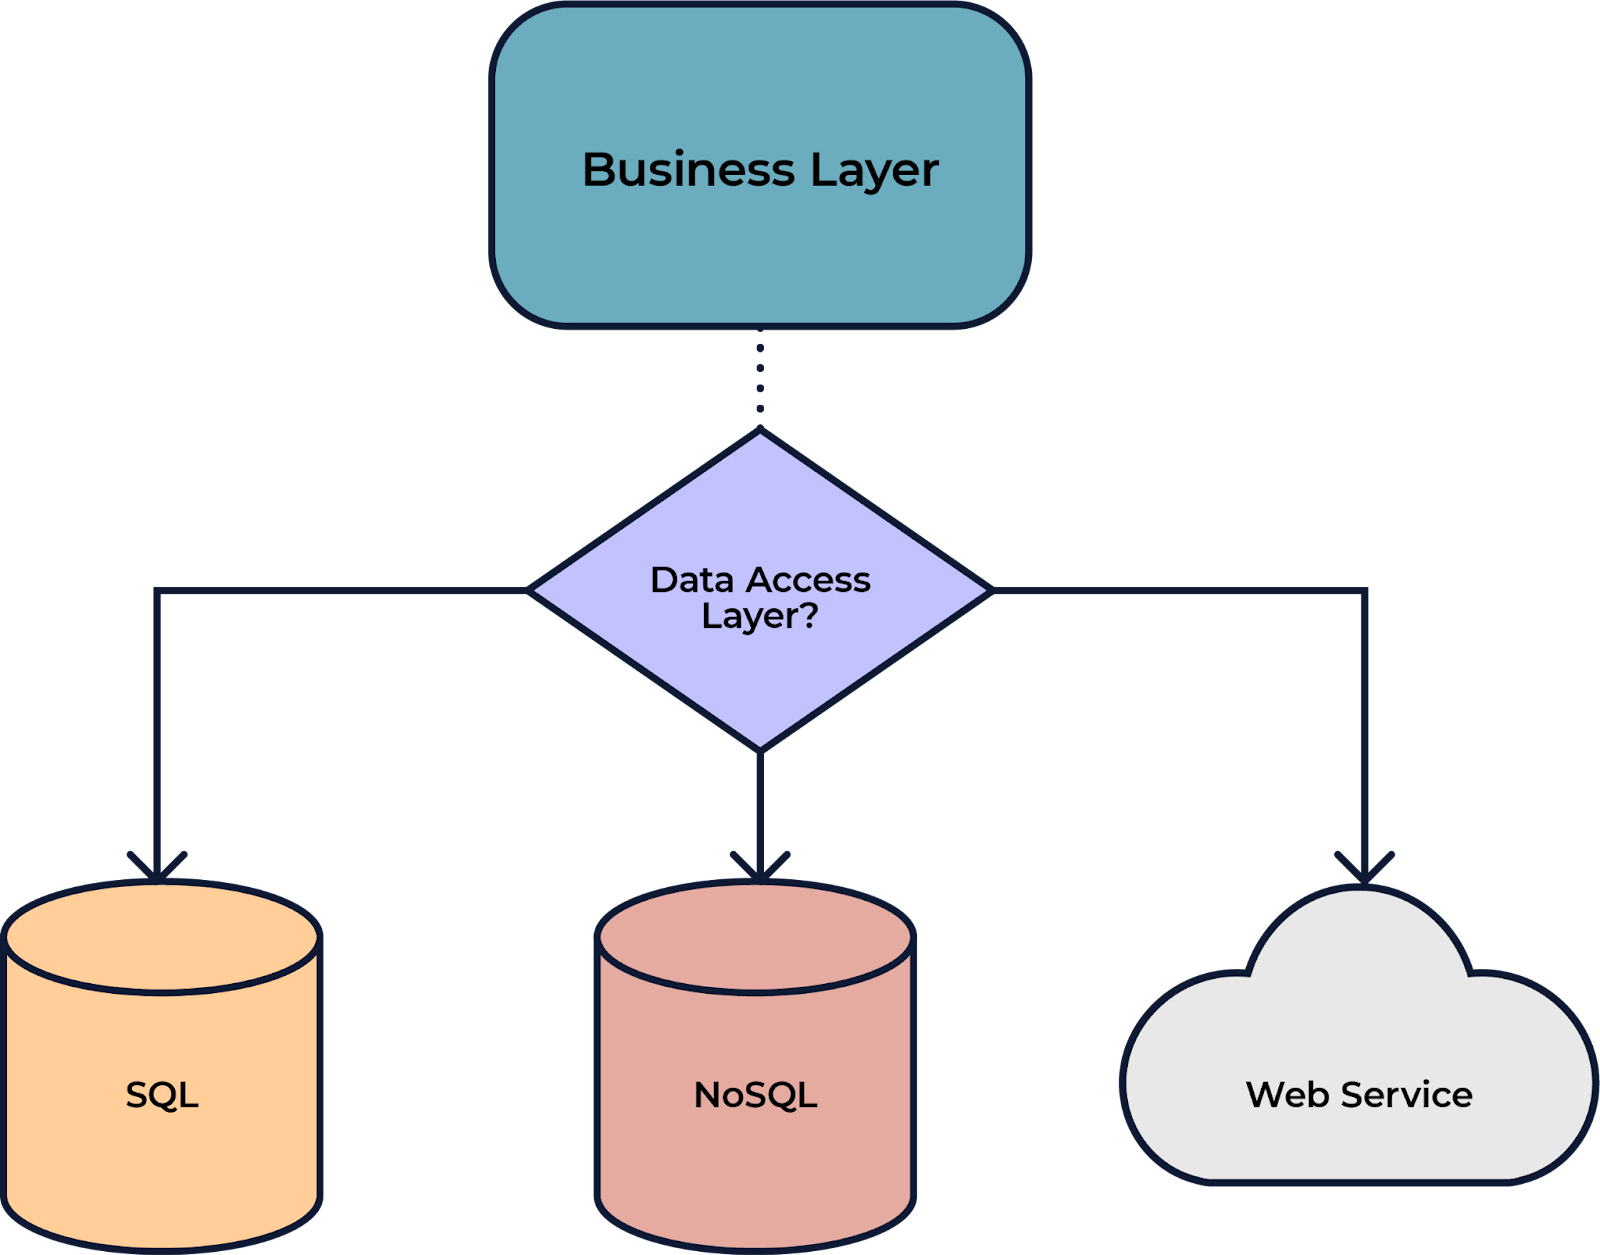 Imagem que traz a abstração da camada de negócio, que desce para camada de dados e se divide nos bancos de dados SQL e NoSQL, além do Web Service.